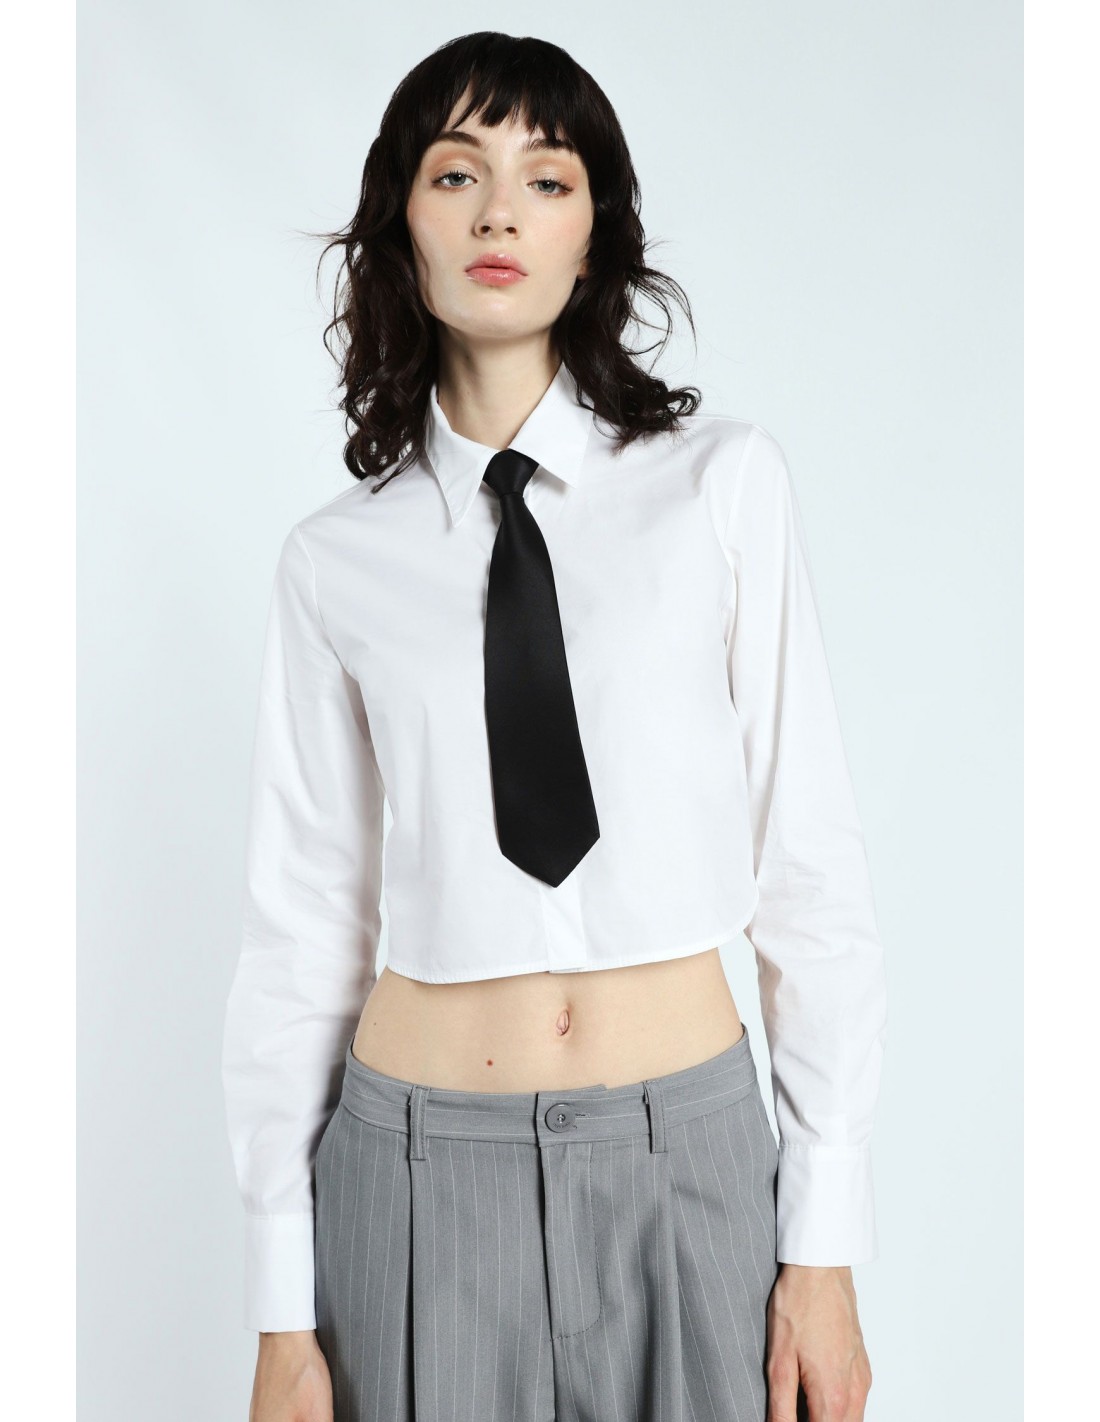 https://www.imperial-lyon.fr/28400-thickbox_default/imperial-femme-chemise-blanche-longueur-courte-avec-cravate-noire.jpg